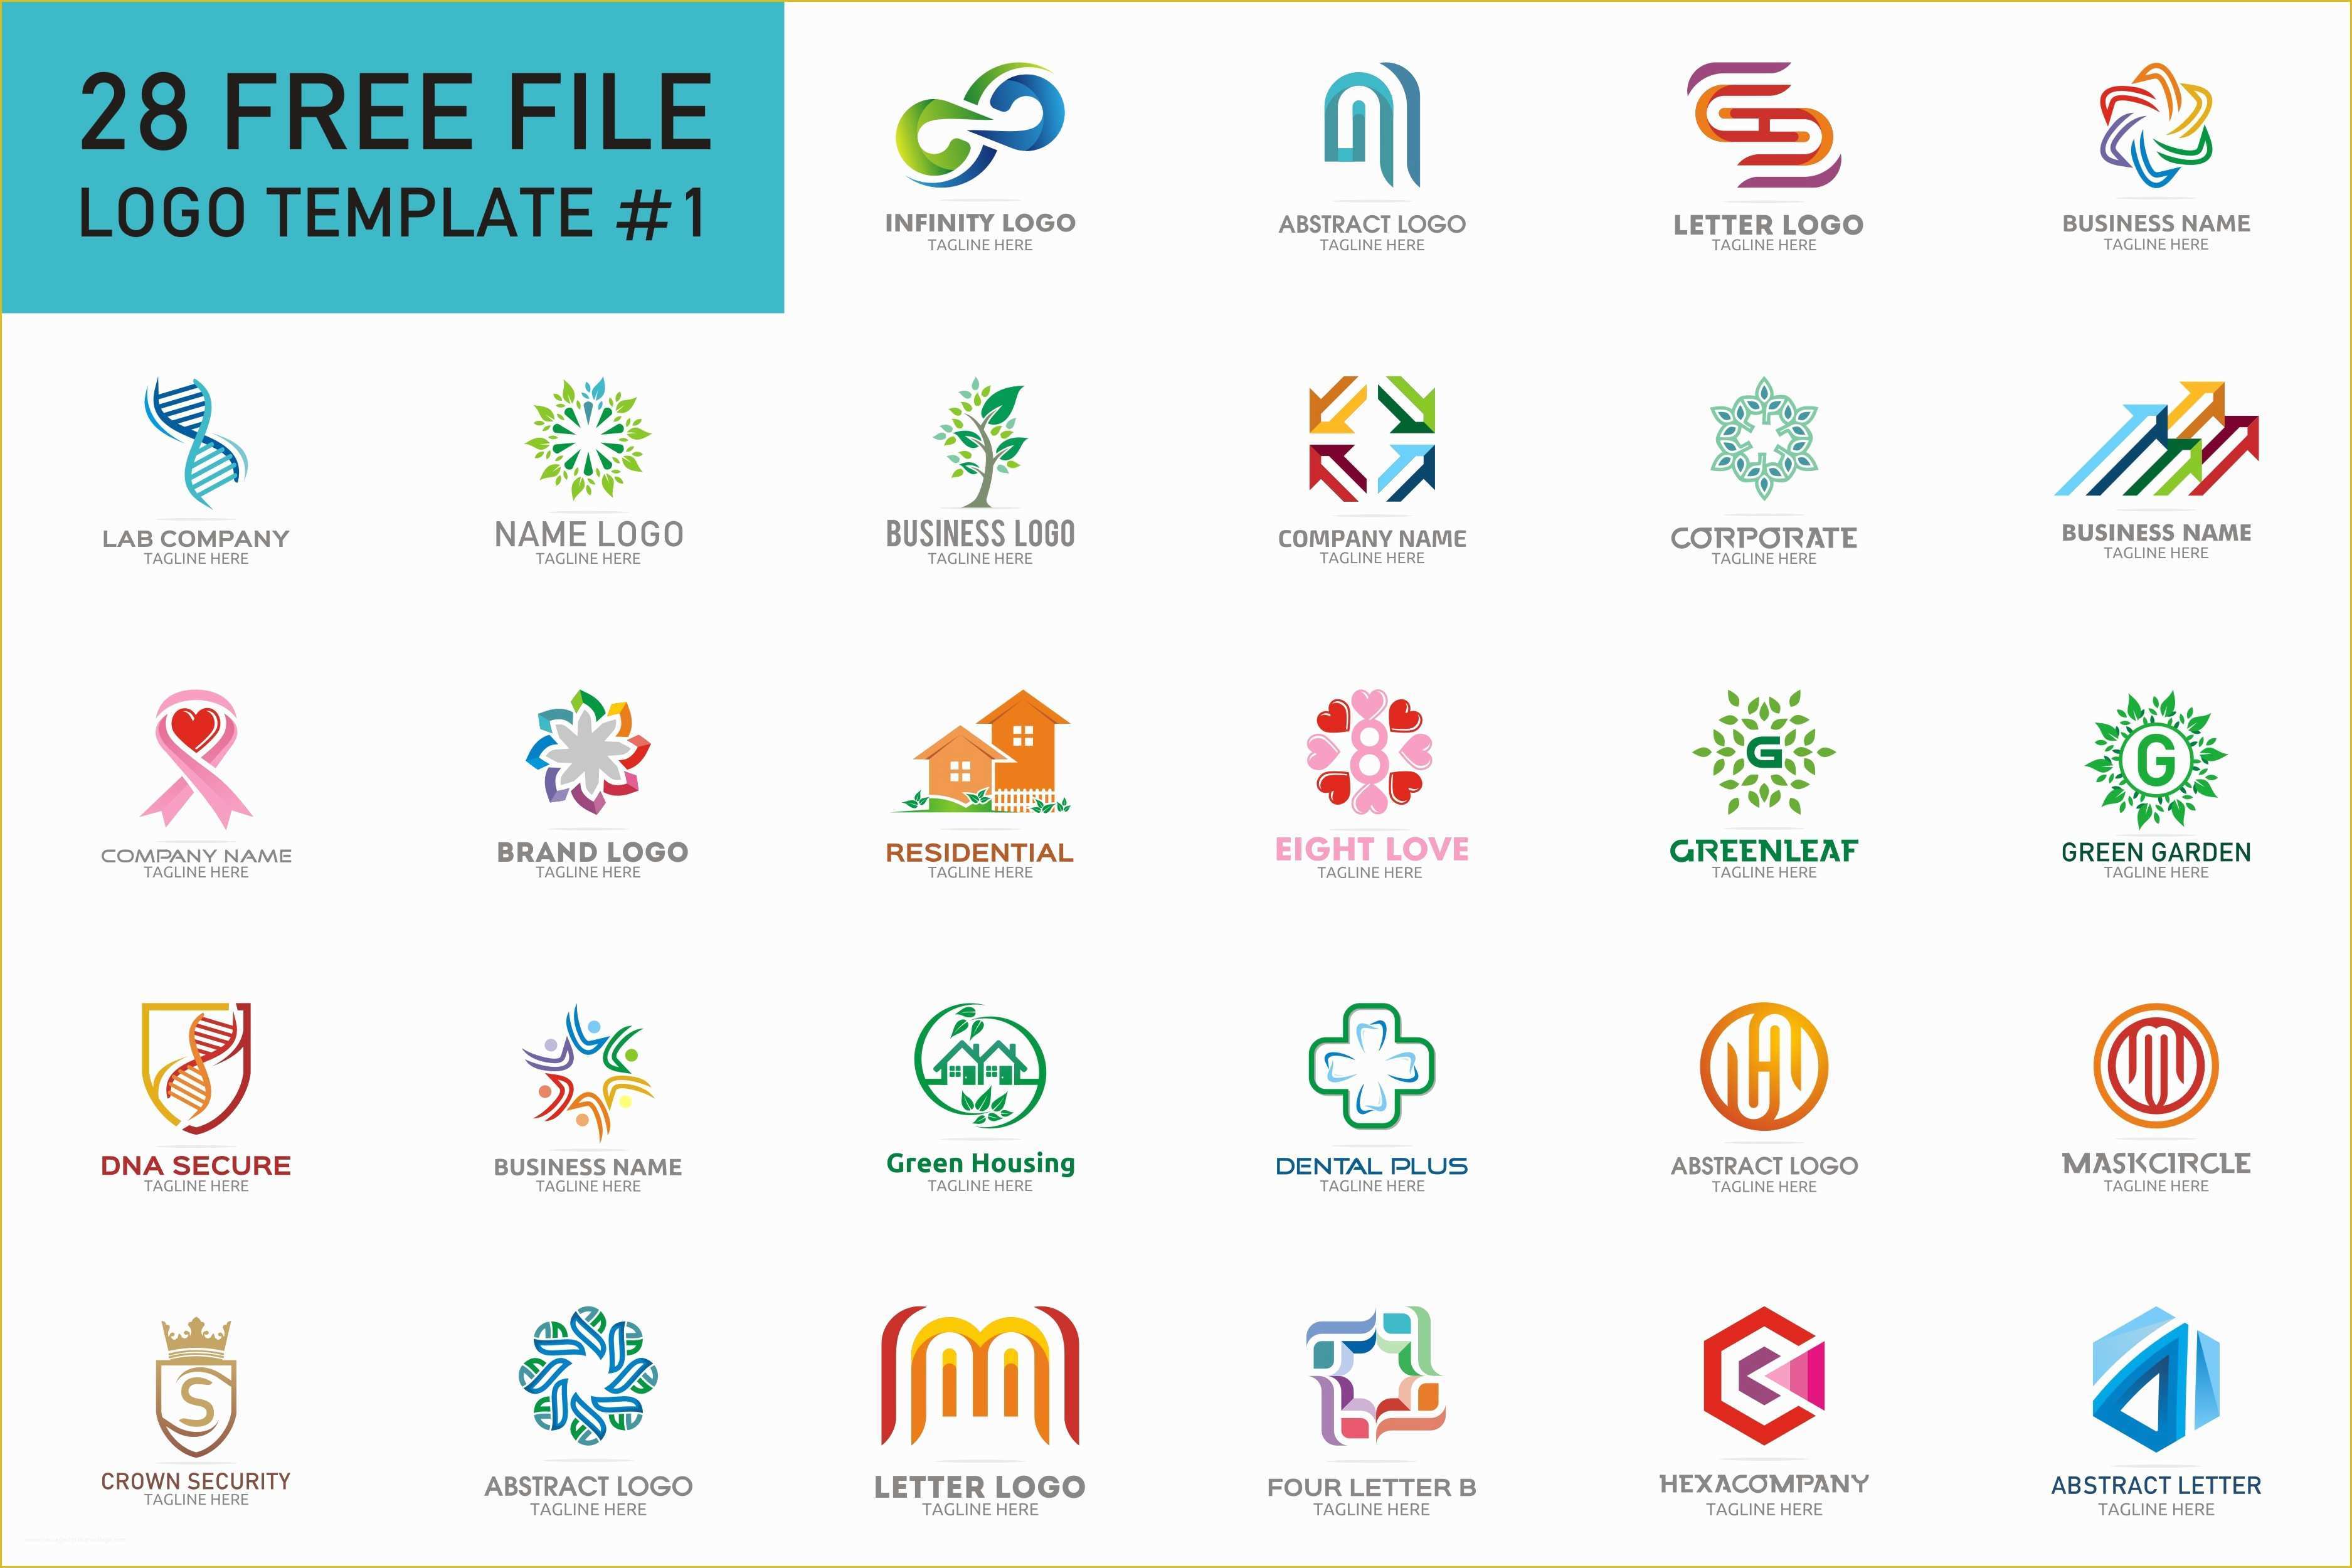 Free Logo Templates Of 28 Free Logo Templates – Free Design Resources